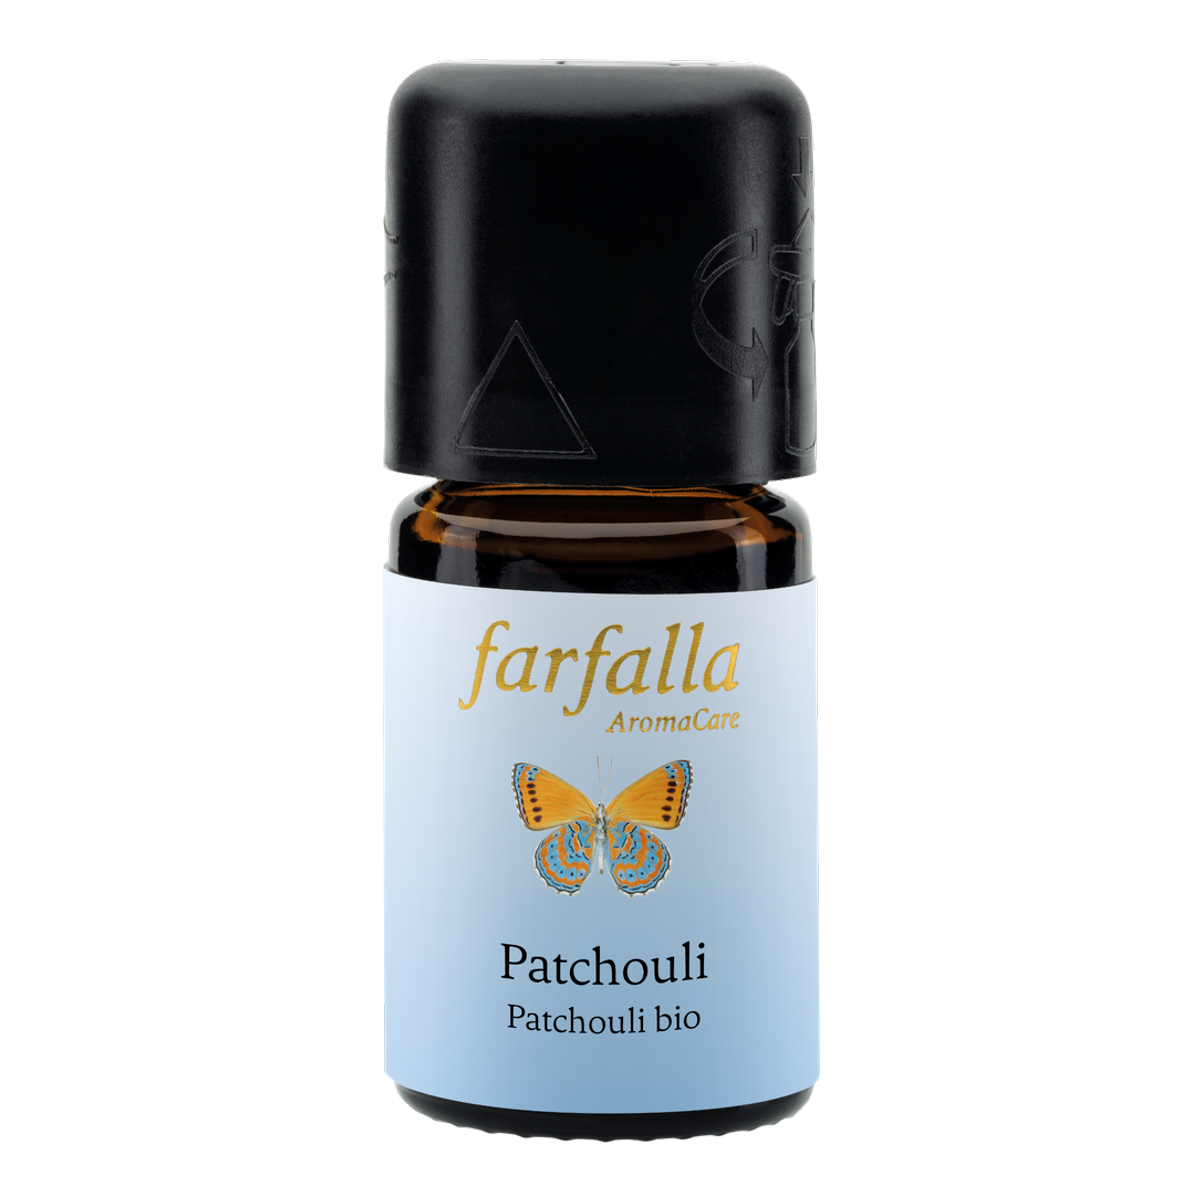 Farfalla Patchouli bio Grand Cru, ätherisches Öl